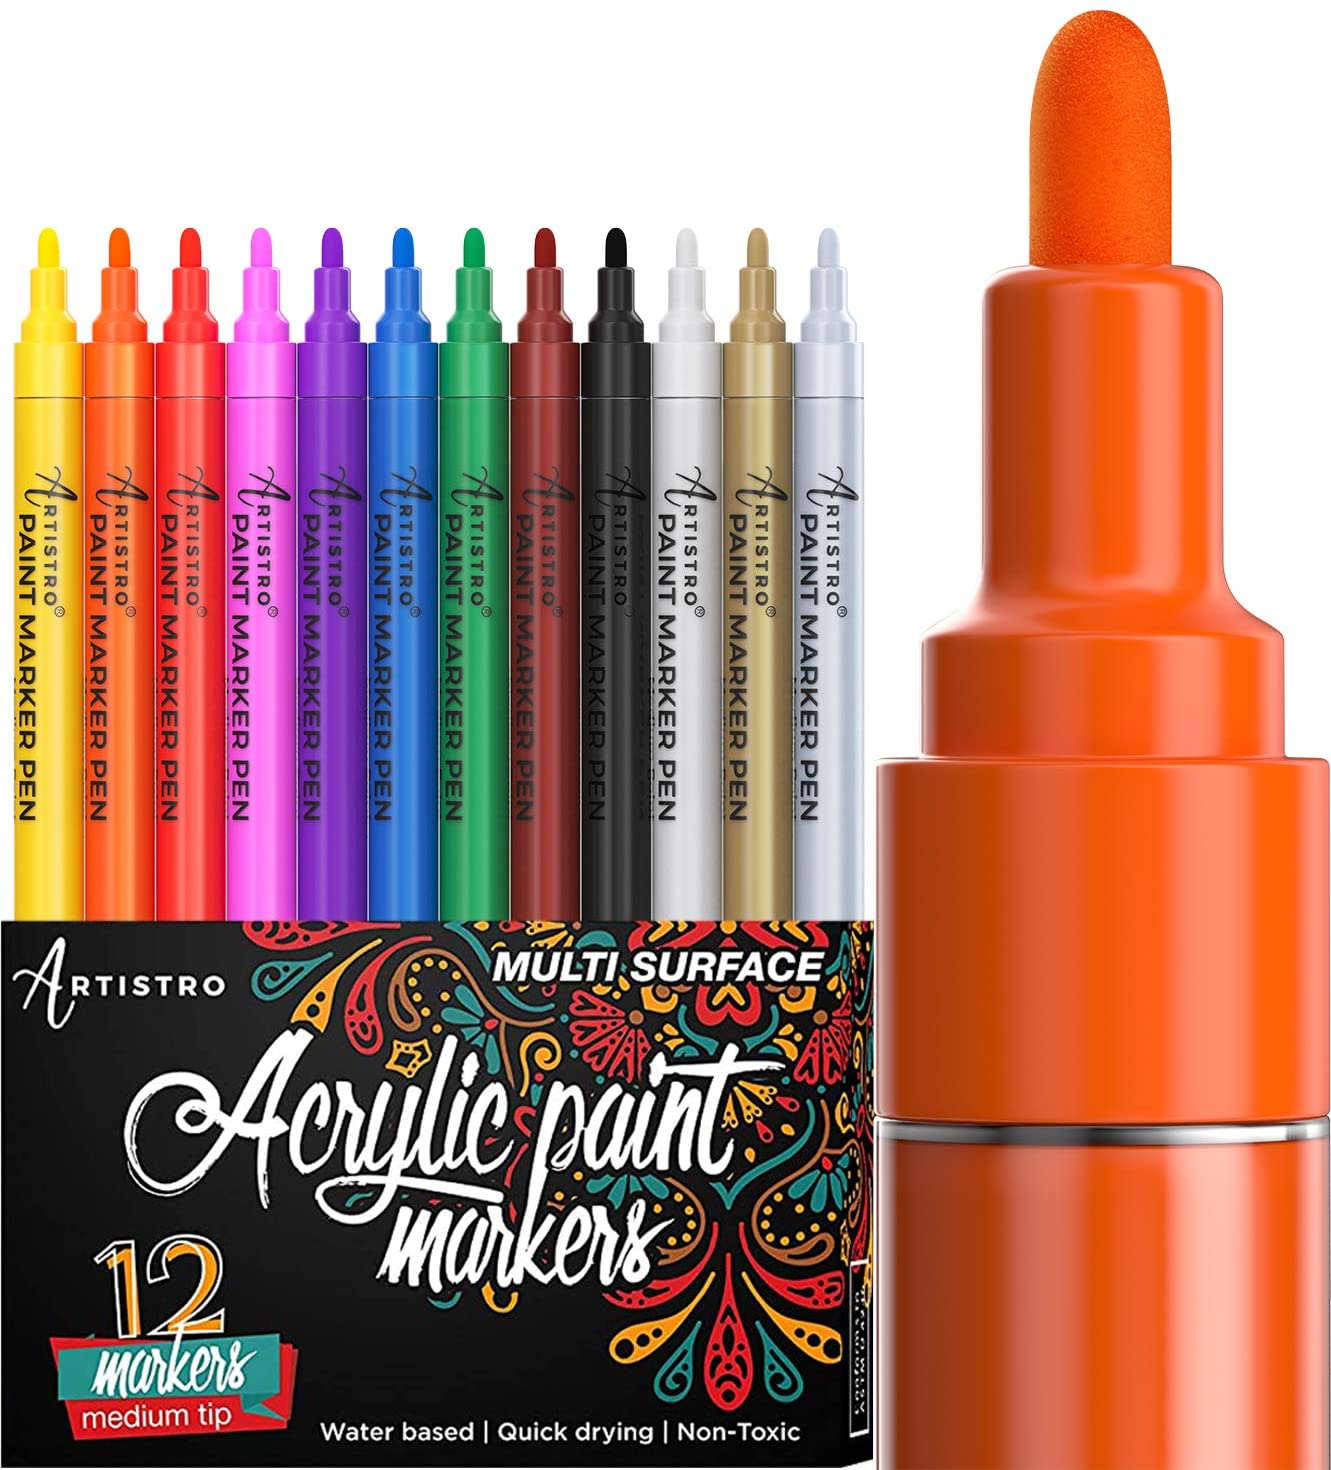 FUMILE - Rotuladores acrílicos en 36 colores. Juego de marcadores ideales  para pintar sobre superficies duras, como vinilo o parqué, madera, metal